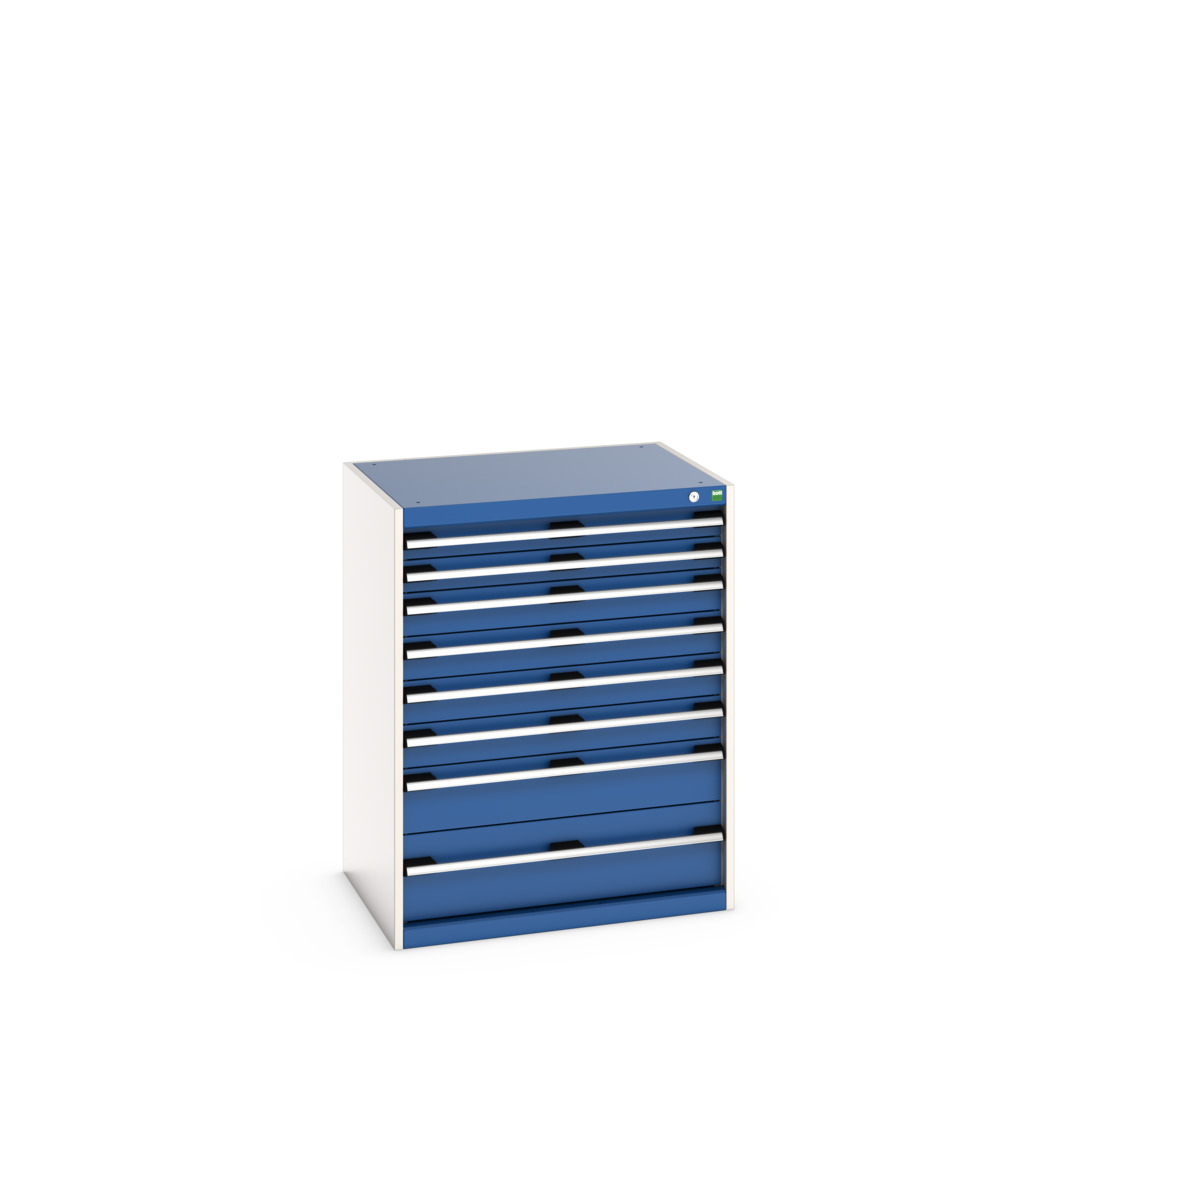 40020142.11V - cubio drawer cabinet